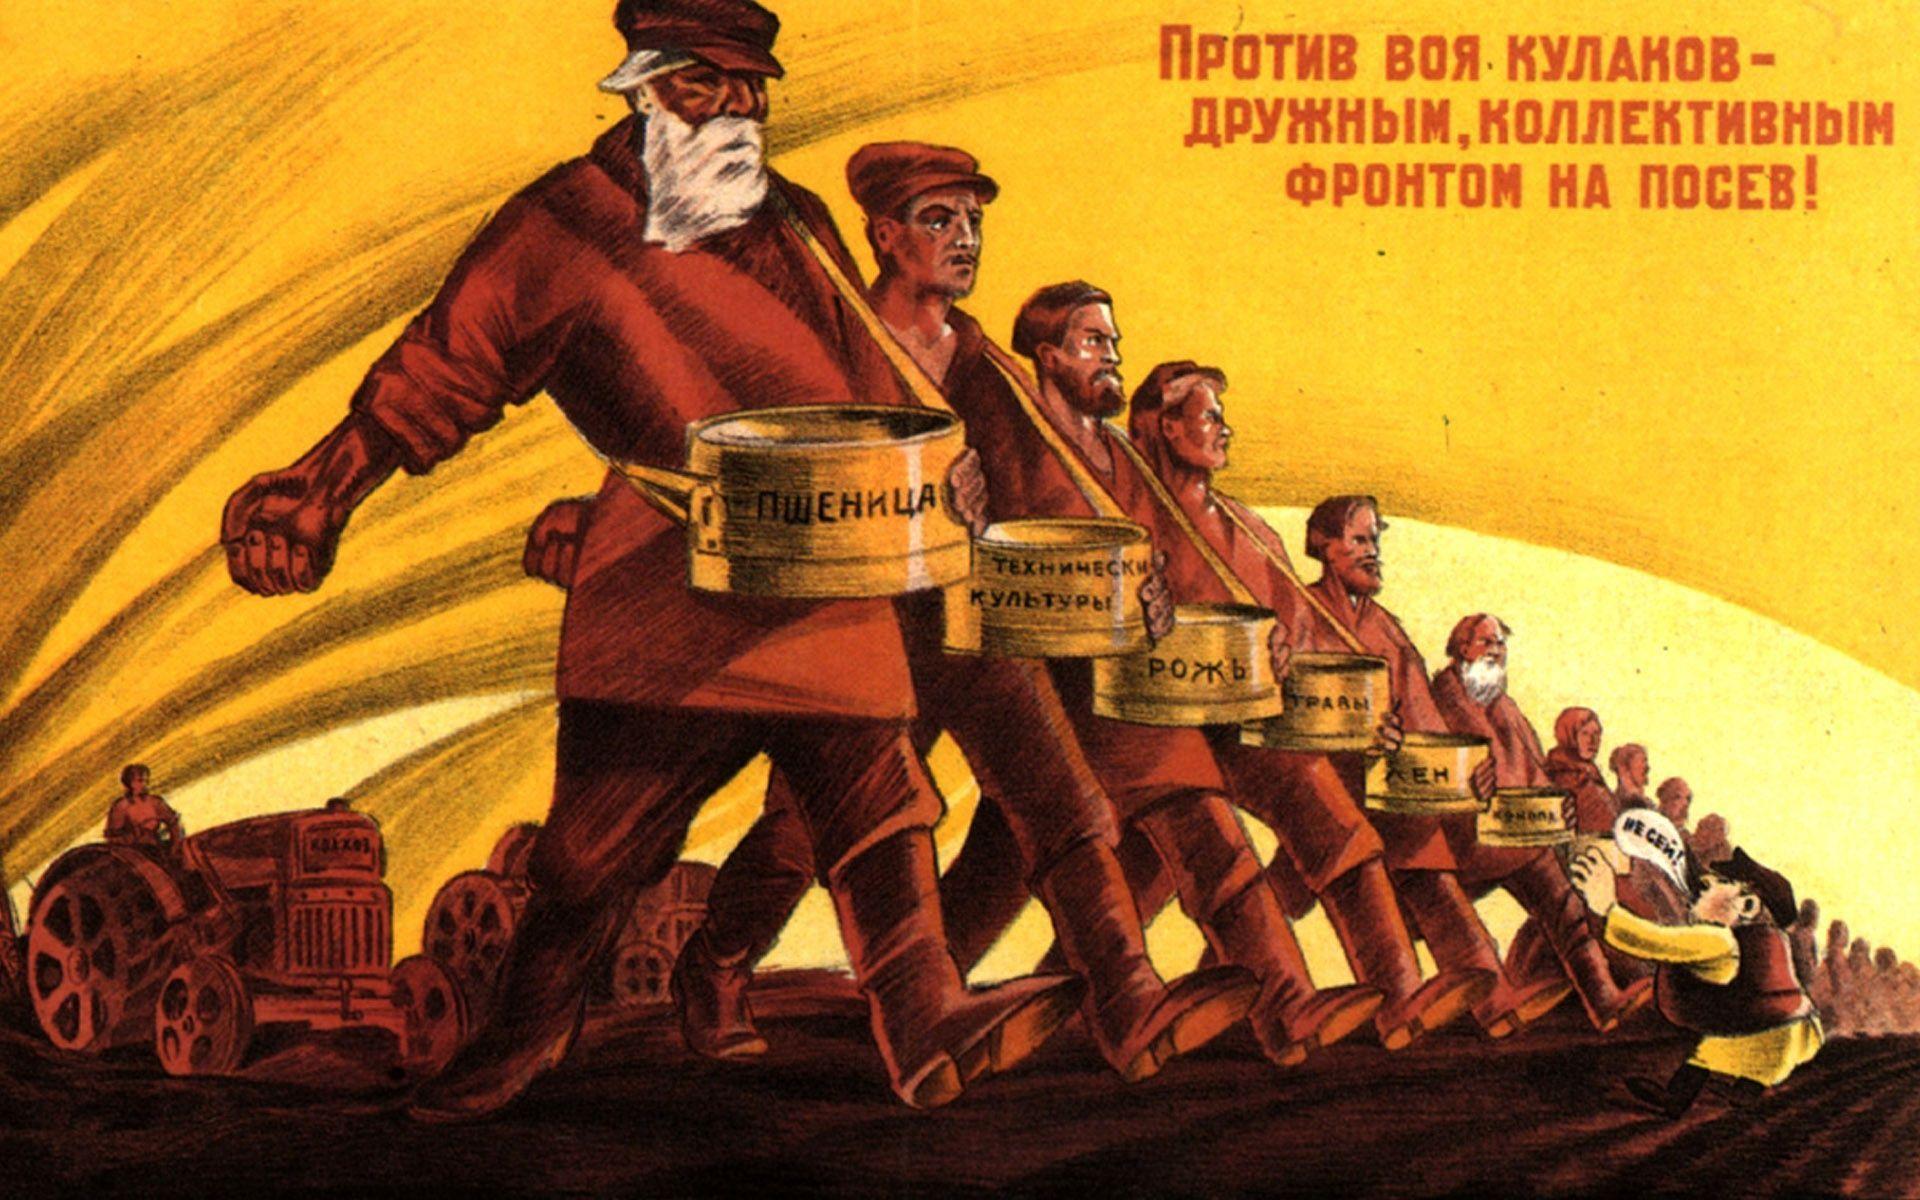 Soviet wallpaper in full HD it&;s Russia